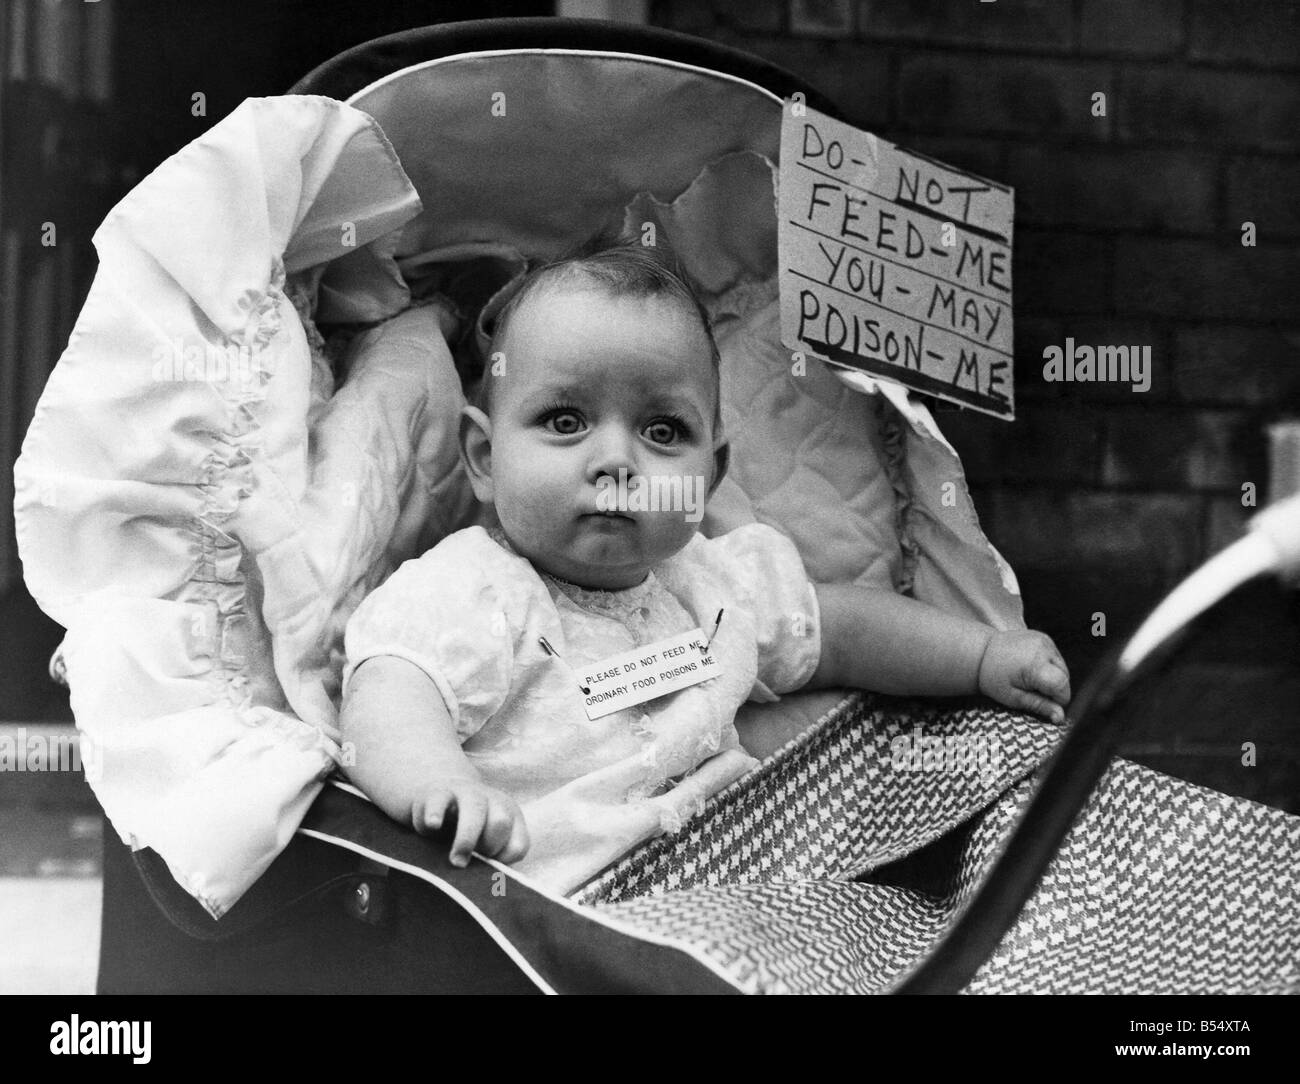 Paul bébé dans son landau avec l'avis qui doit être observée. Novembre 1968  P012115 Photo Stock - Alamy